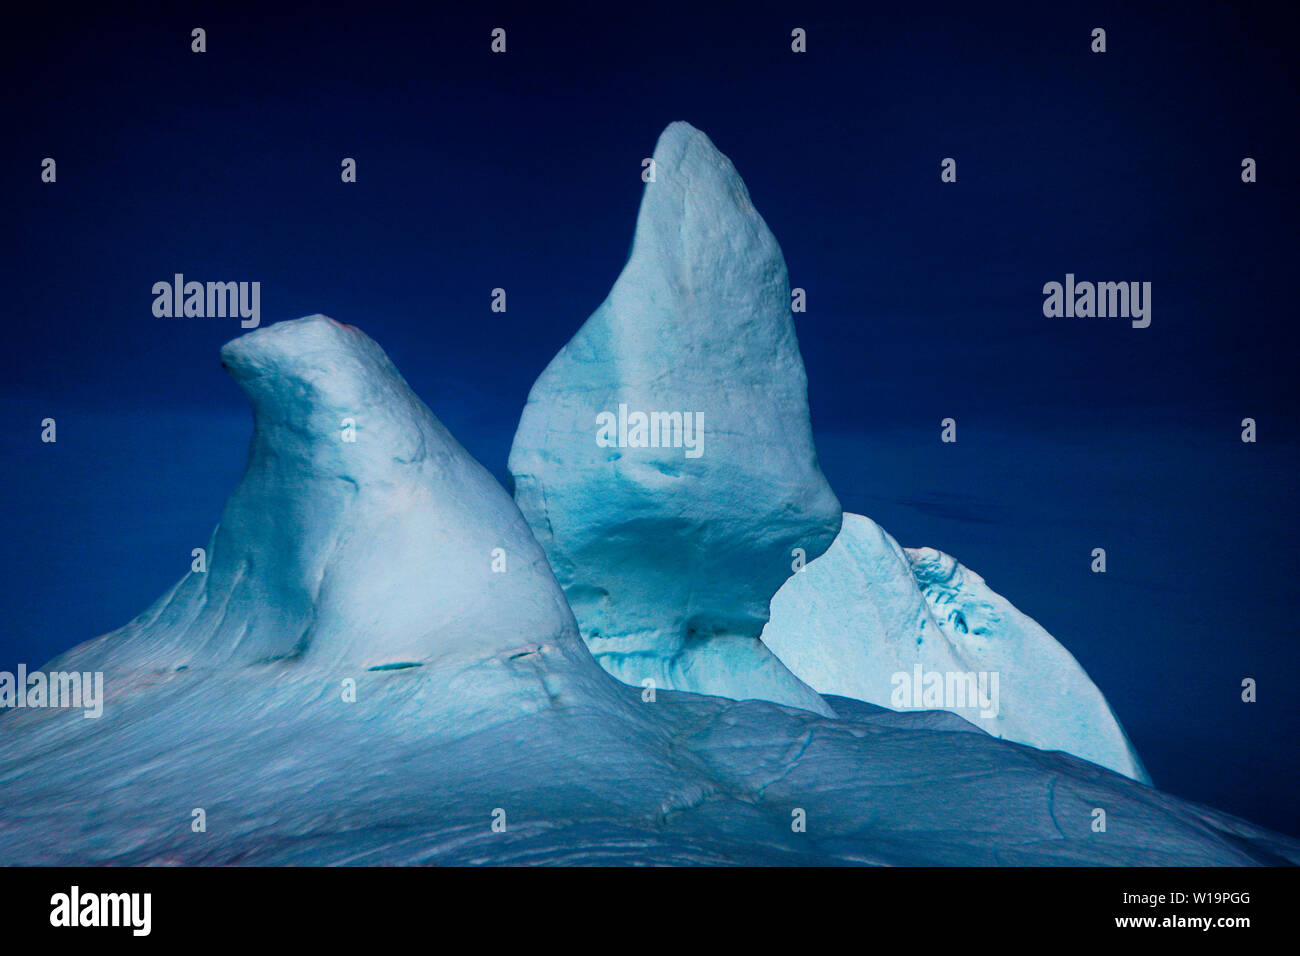 Ansammeln von Eisbergen an der Mündung des Ilulissat-Eisfjords. Nach Angaben von Forschern des Dänischen Meterologischen Instituts schrumpft der grönländische Eisschild mit alarmierender Geschwindigkeit. Fast zehn Kubikkilometer Eis schmilzt jeden Tag, was Süßwasser in den Ozean schleust. Der Eisschild spielt eine wichtige Rolle bei der Abkühlung des Planeten, da 90 Prozent des Sonnenlichts wieder in die Atmosphäre reflektiert werden. Der Verlust des grönländischen Eises aufgrund der vom Menschen verursachten globalen Erwärmung wird den Meeresspiegel um bis zu 20 Fuß erhöhen, die Meeresströmungen stören, indem der Salzgehalt verdünnt wird und die Erwärmung des Planeten beschleunigen. Stockfoto